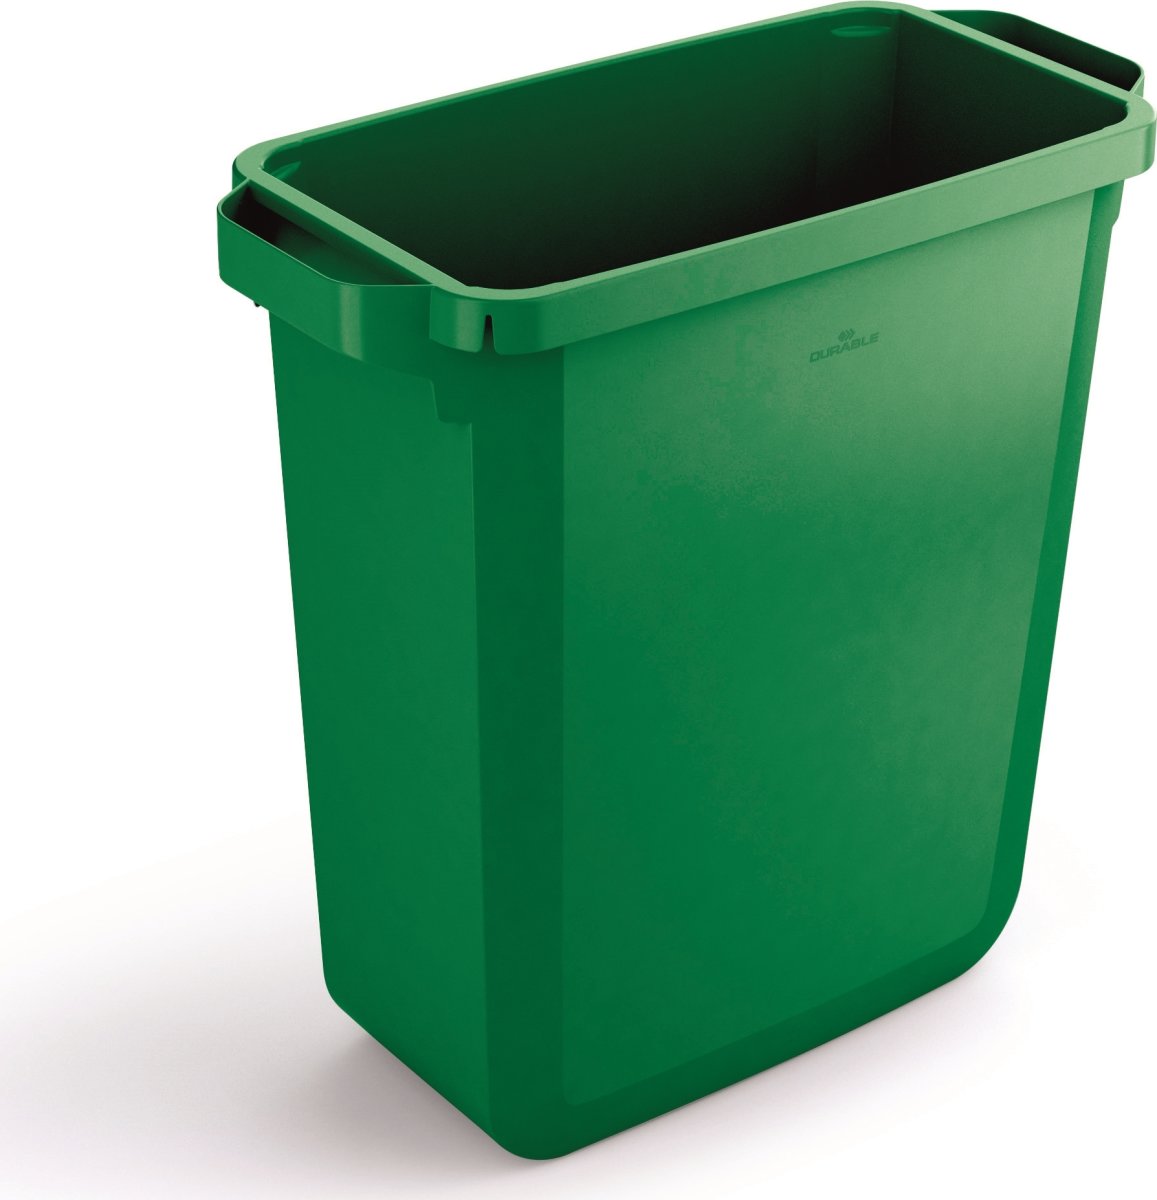 Durabin avfallshink | 60 l | Grön